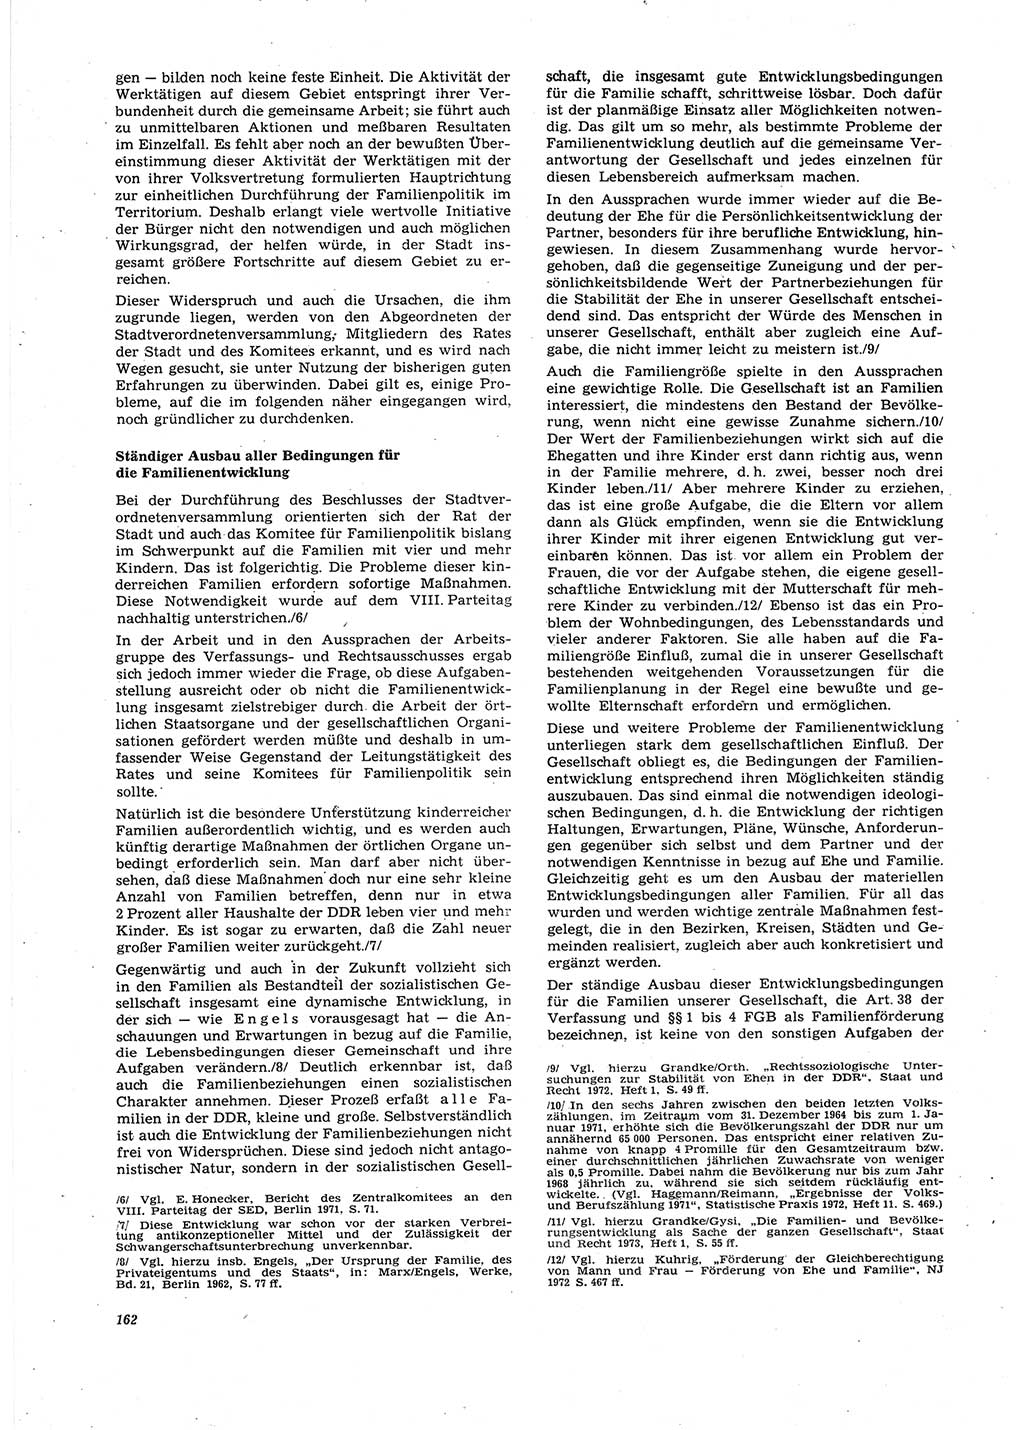 Neue Justiz (NJ), Zeitschrift für Recht und Rechtswissenschaft [Deutsche Demokratische Republik (DDR)], 27. Jahrgang 1973, Seite 162 (NJ DDR 1973, S. 162)